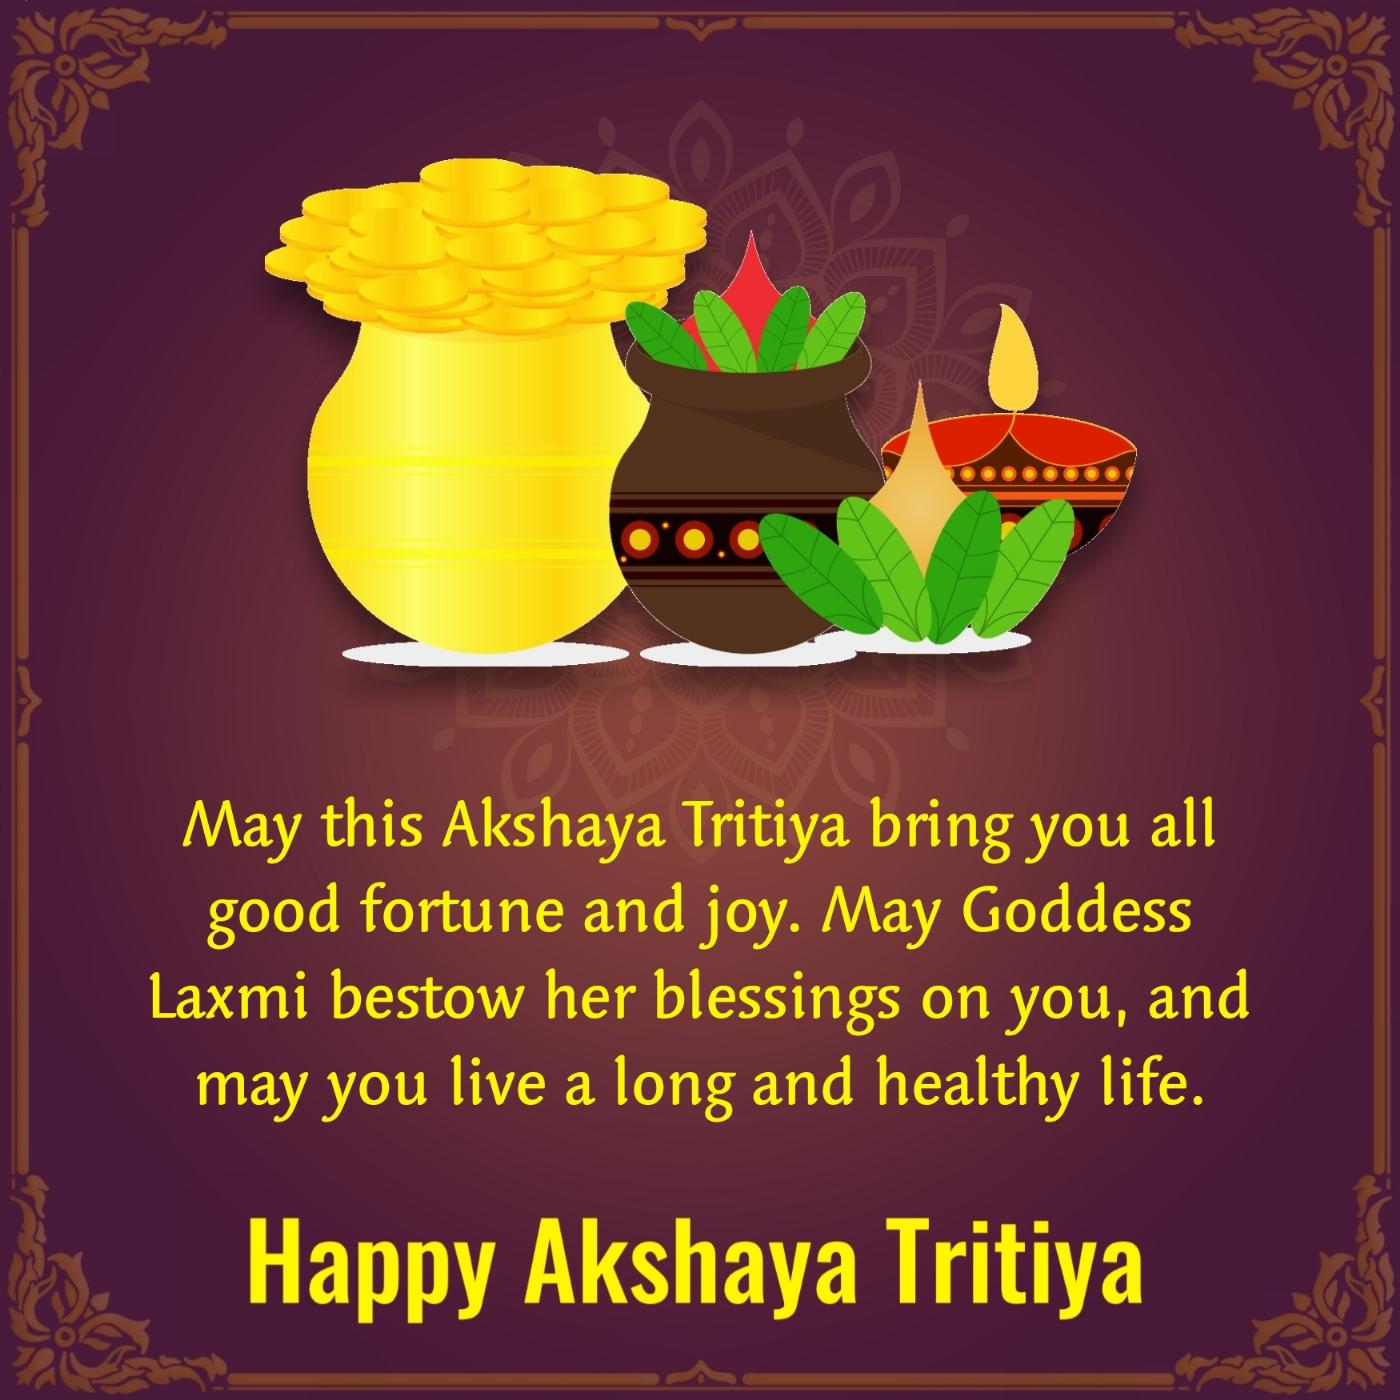 May this Akshaya Tritiya bring you all good fortune and joy